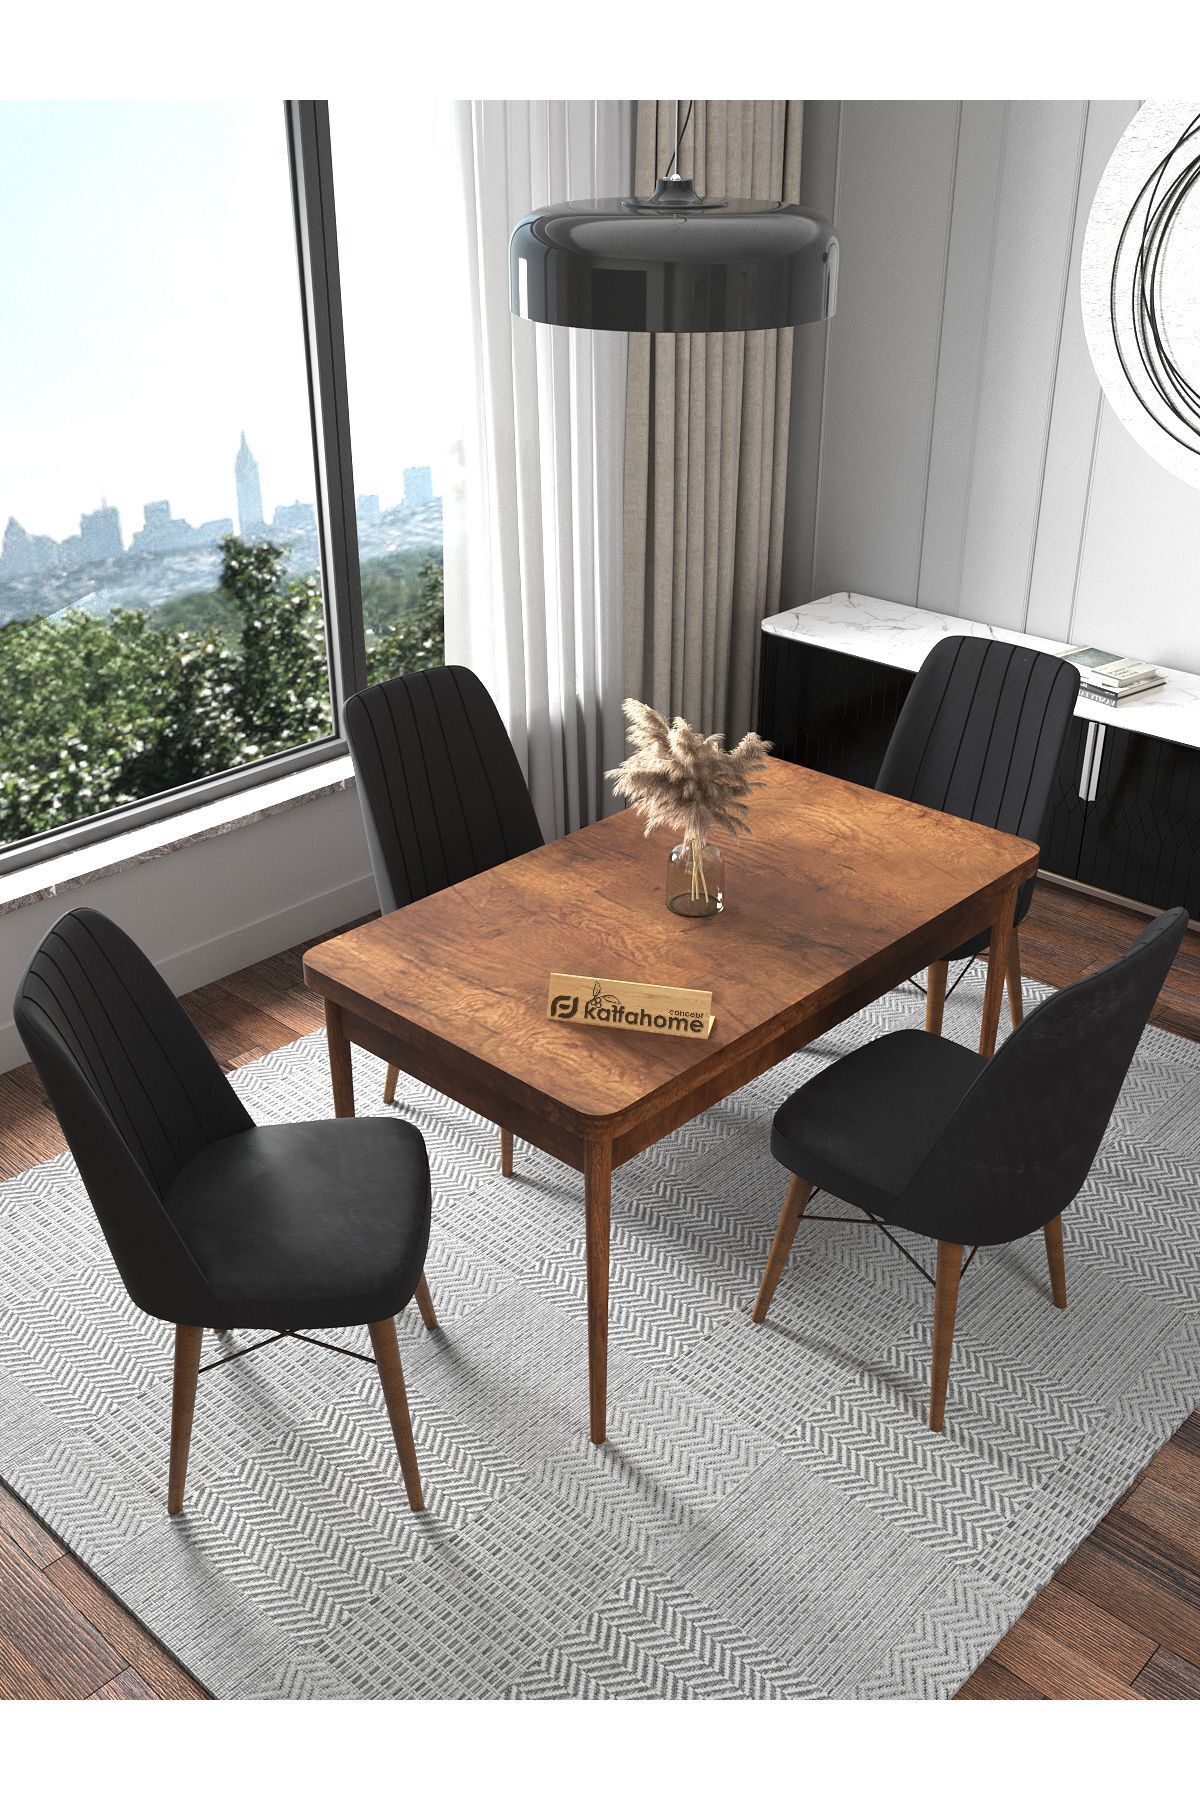 Kaffahome Fixed Serisi Barok 70x110 Sabit Yemek Masası , Yemek Masa Takımı 4 Siyah Sandalye